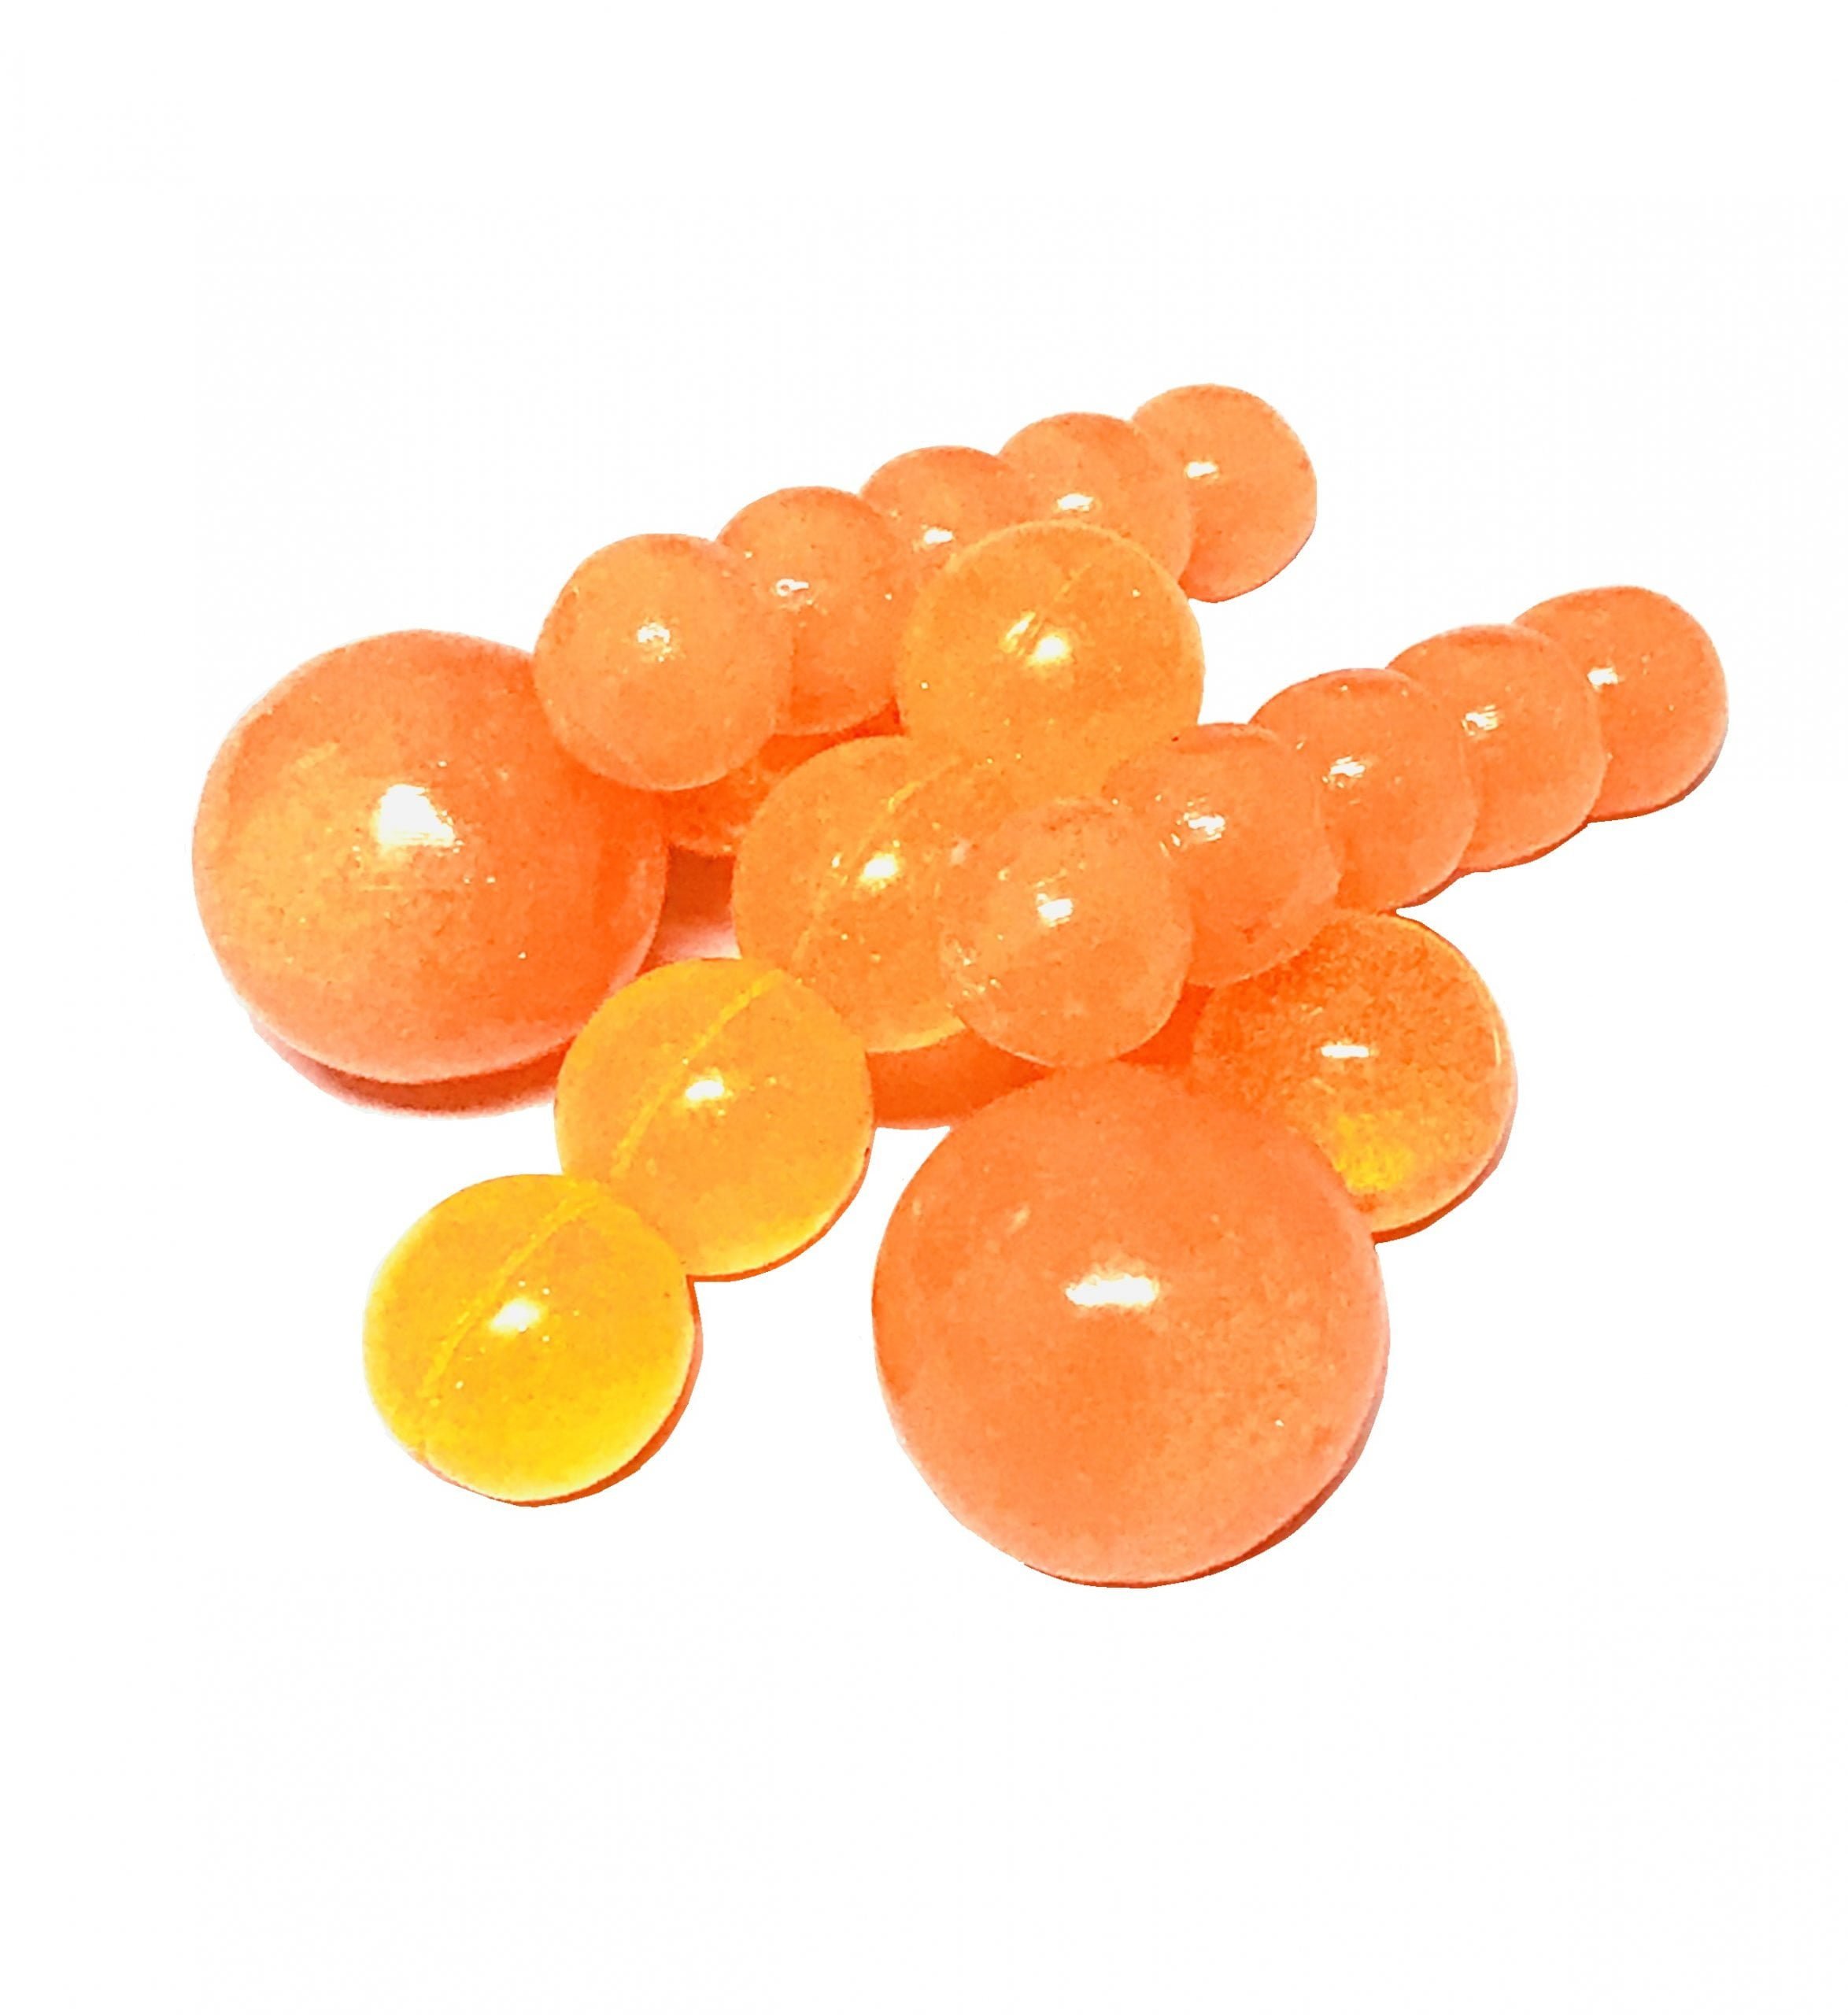 https://horkerbaits.com/wp-content/uploads/2020/04/Horker-Orange-soda-monster-chomps-soft-beads-scaled.jpg